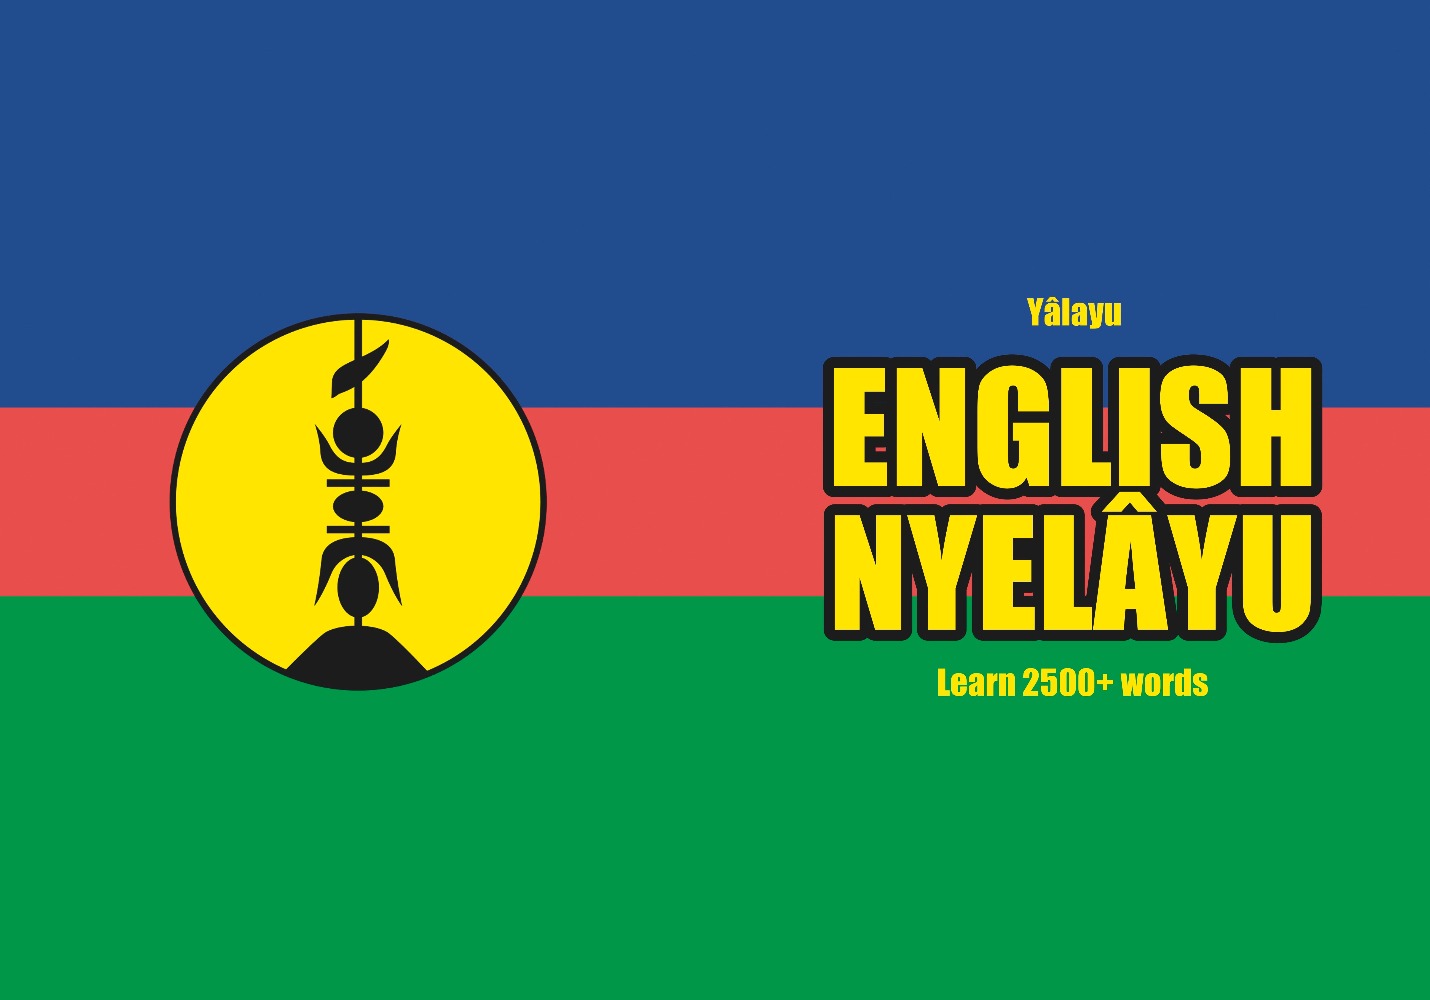 Nyelâyu language learning notebook cover